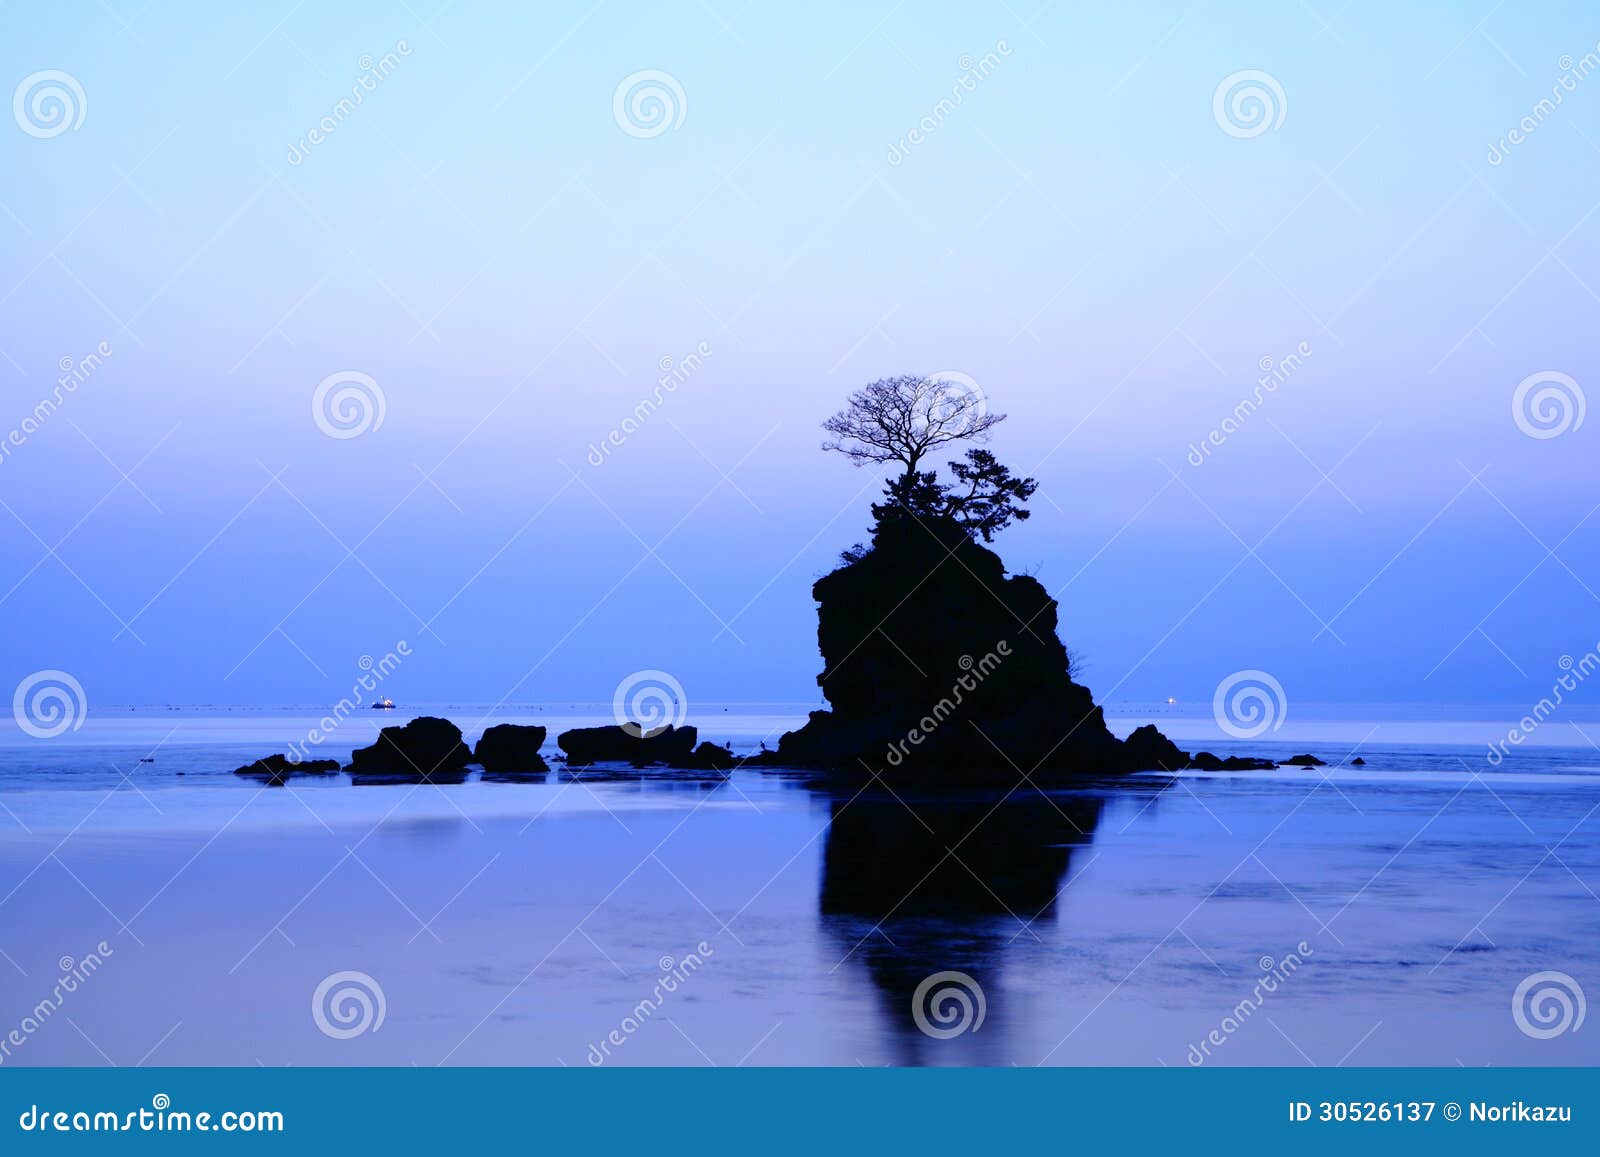 daybreak at the amaharashi coast